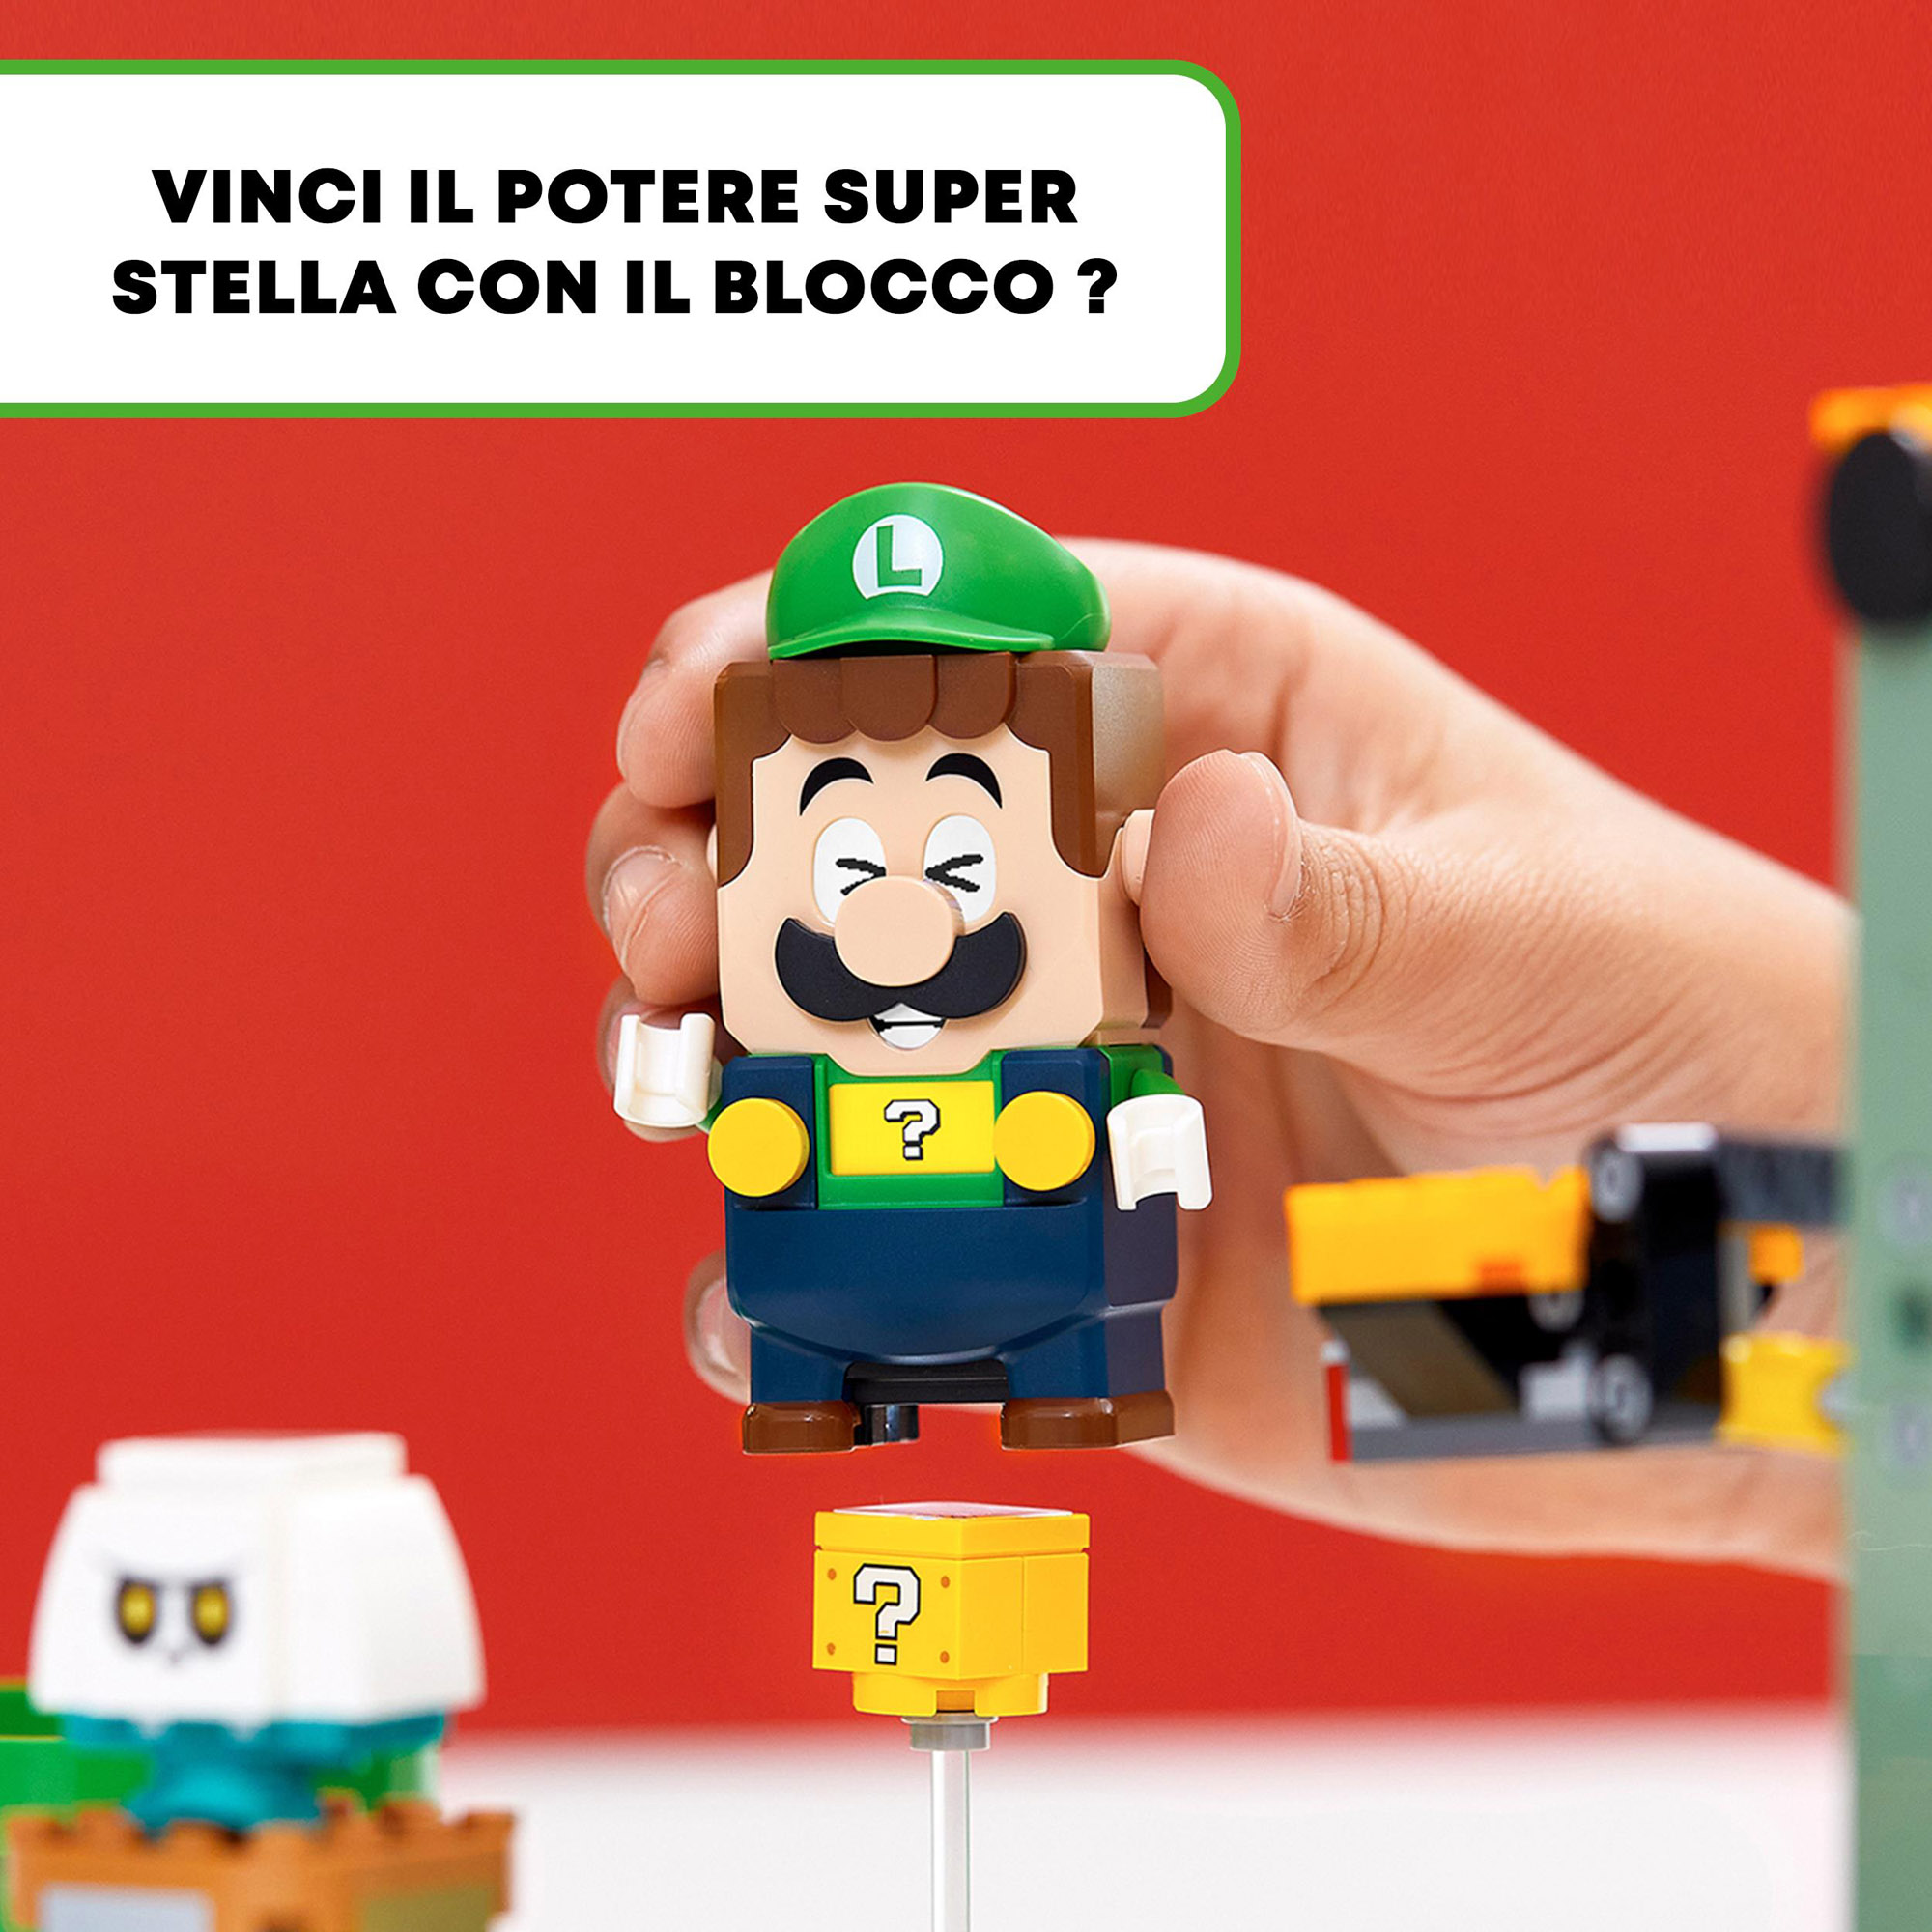 LEGO Super Mario Avventure di Luigi - Starter Pack, 71387 - LEGO, Super Mario